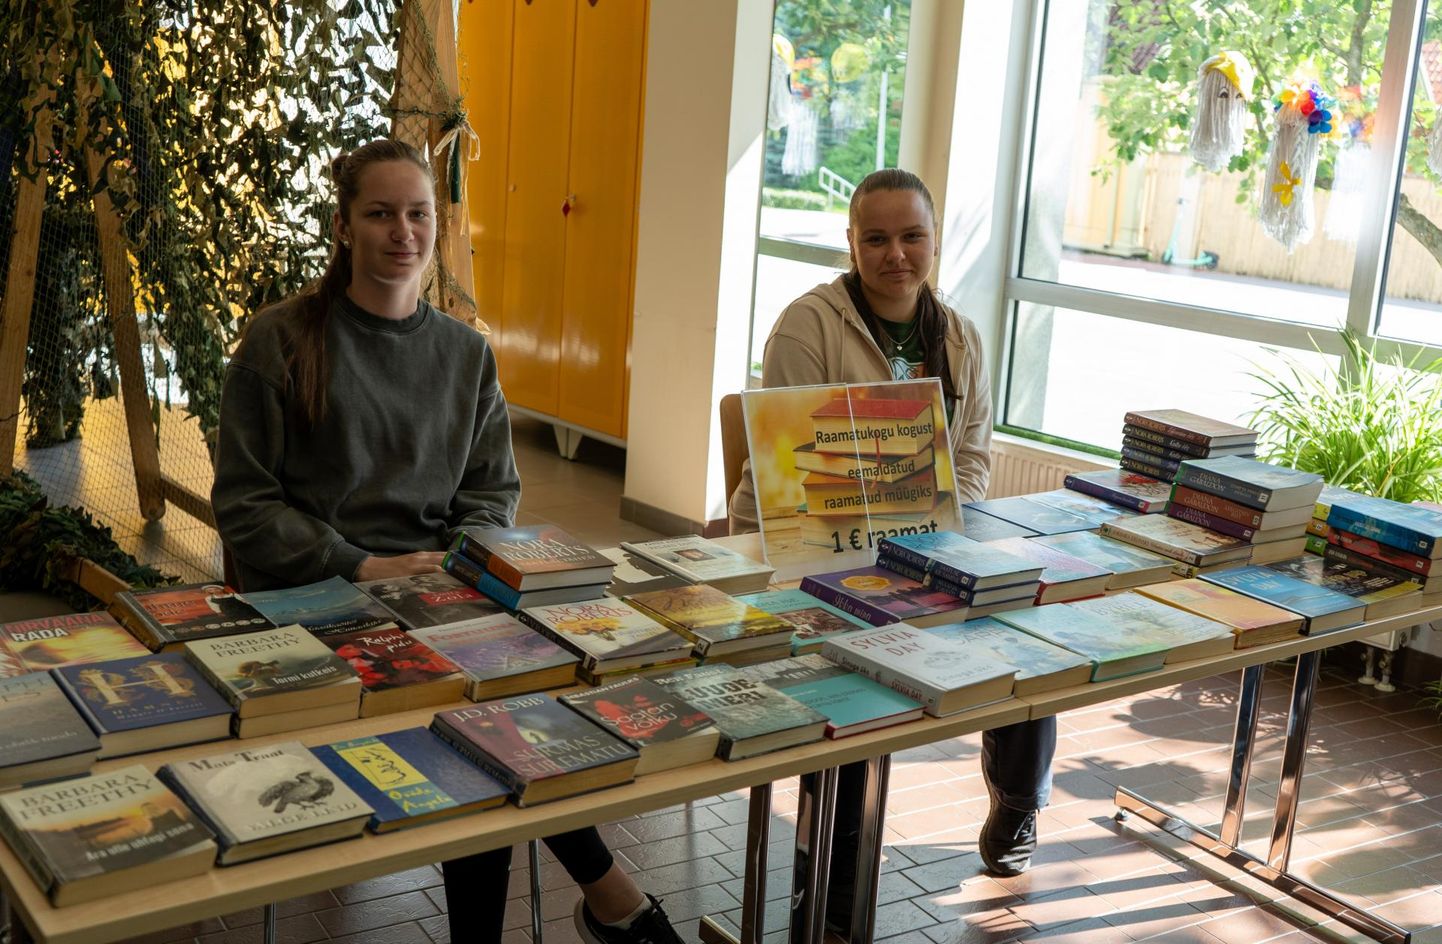 Täna müüvad Viljandi linnaraamatukogu fuajees raamatukogu mahakantud raamatuid linnamaleva töökad noored. Nagu ütles raamatukogu direktor Reet Lubi, on see üks töölõik, mis aitab noortel tutvuda raamatukogus tehtavaga.